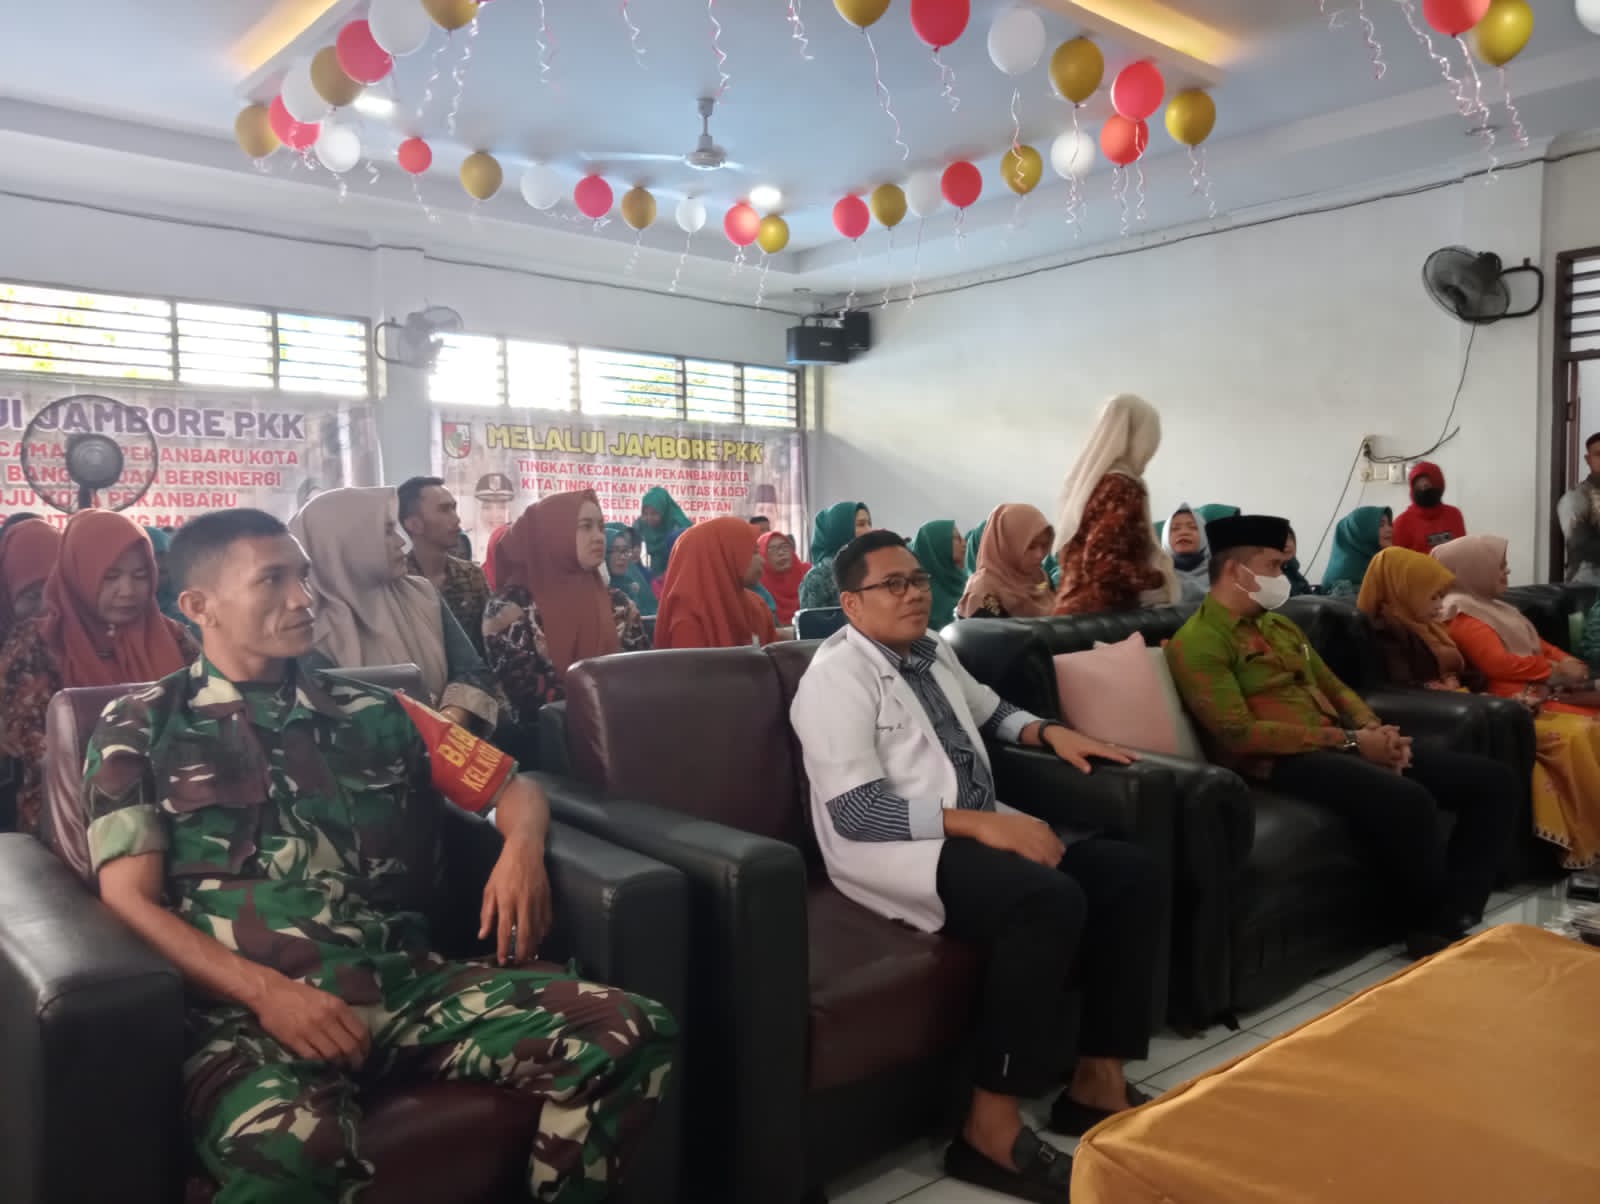 Serka TM Sihite Hadiri Jambore PKK Tingkat Kecamatan Pekanbaru Kota 